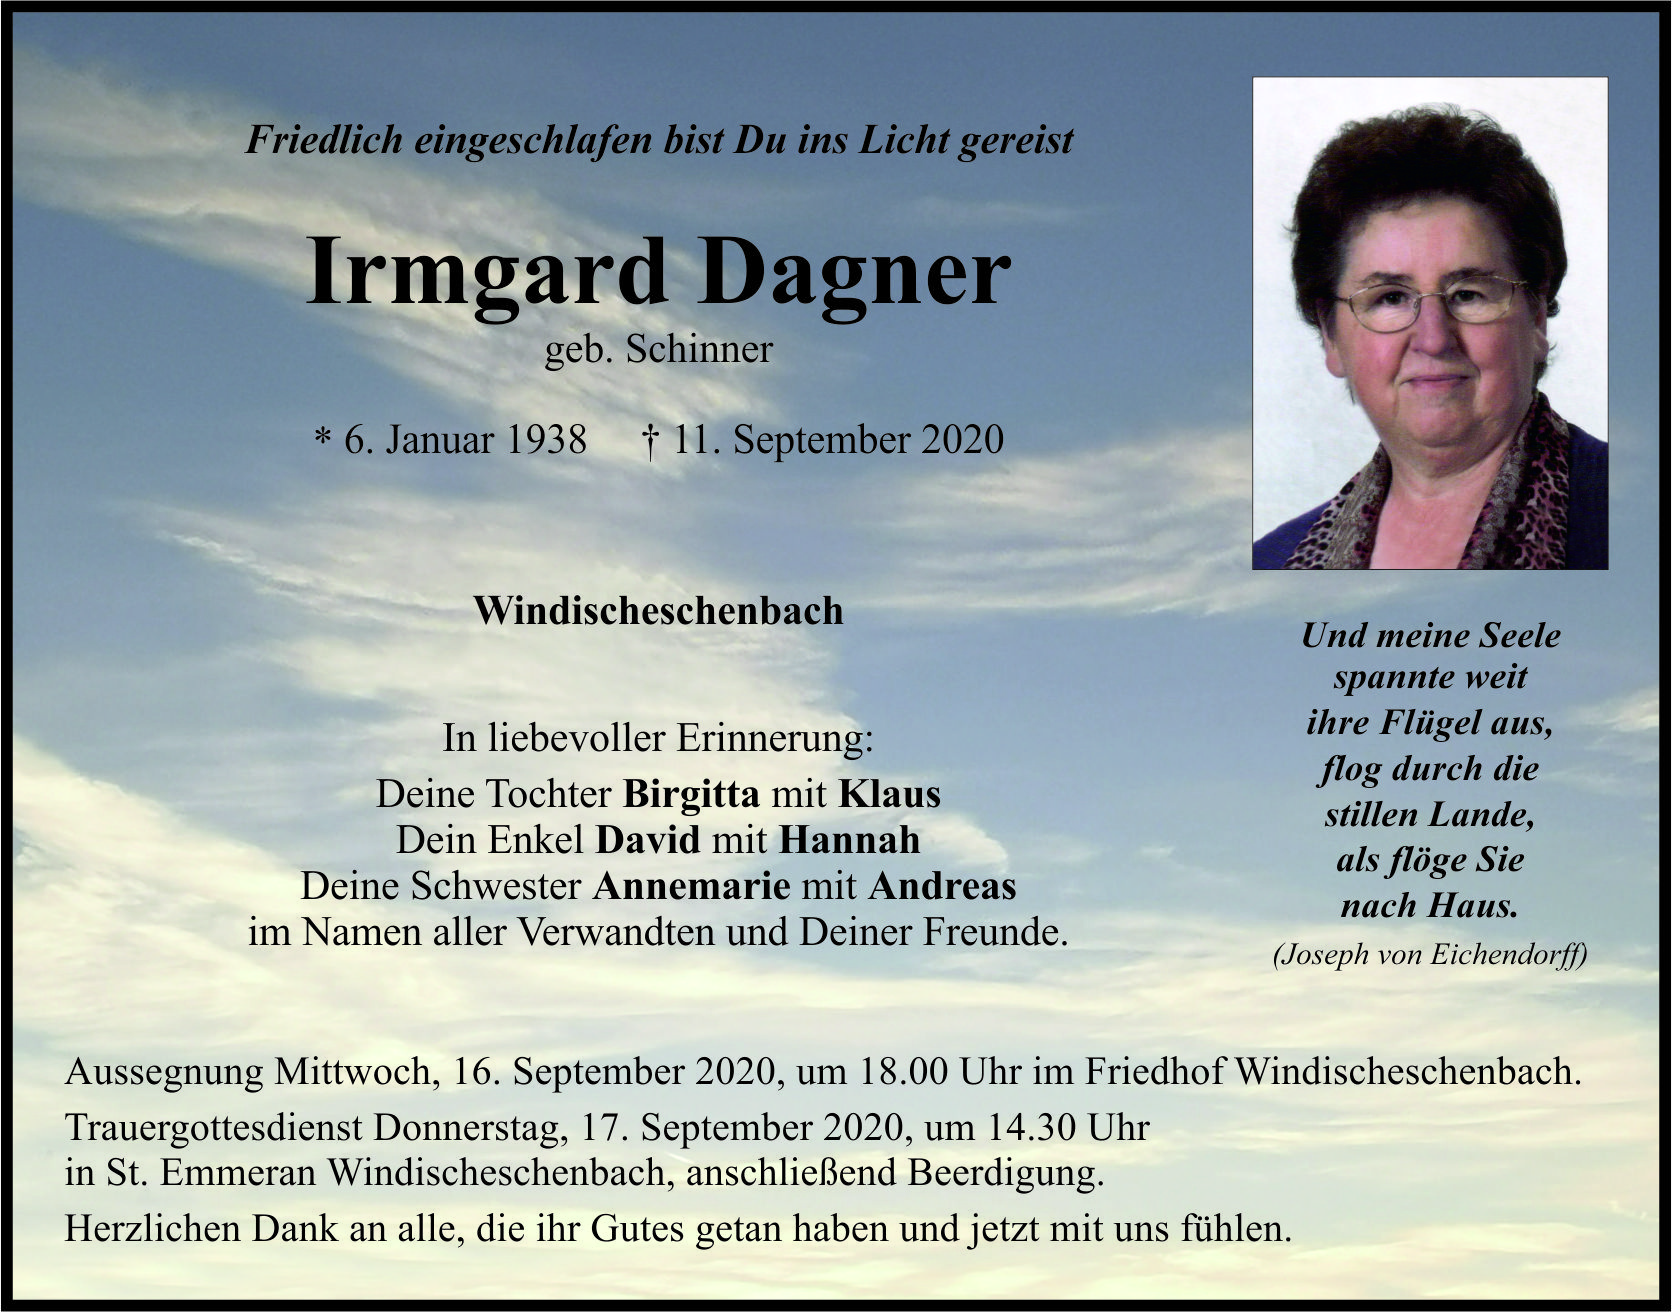 Traueranzeige Irmgard Dagner, Windischeschenbach